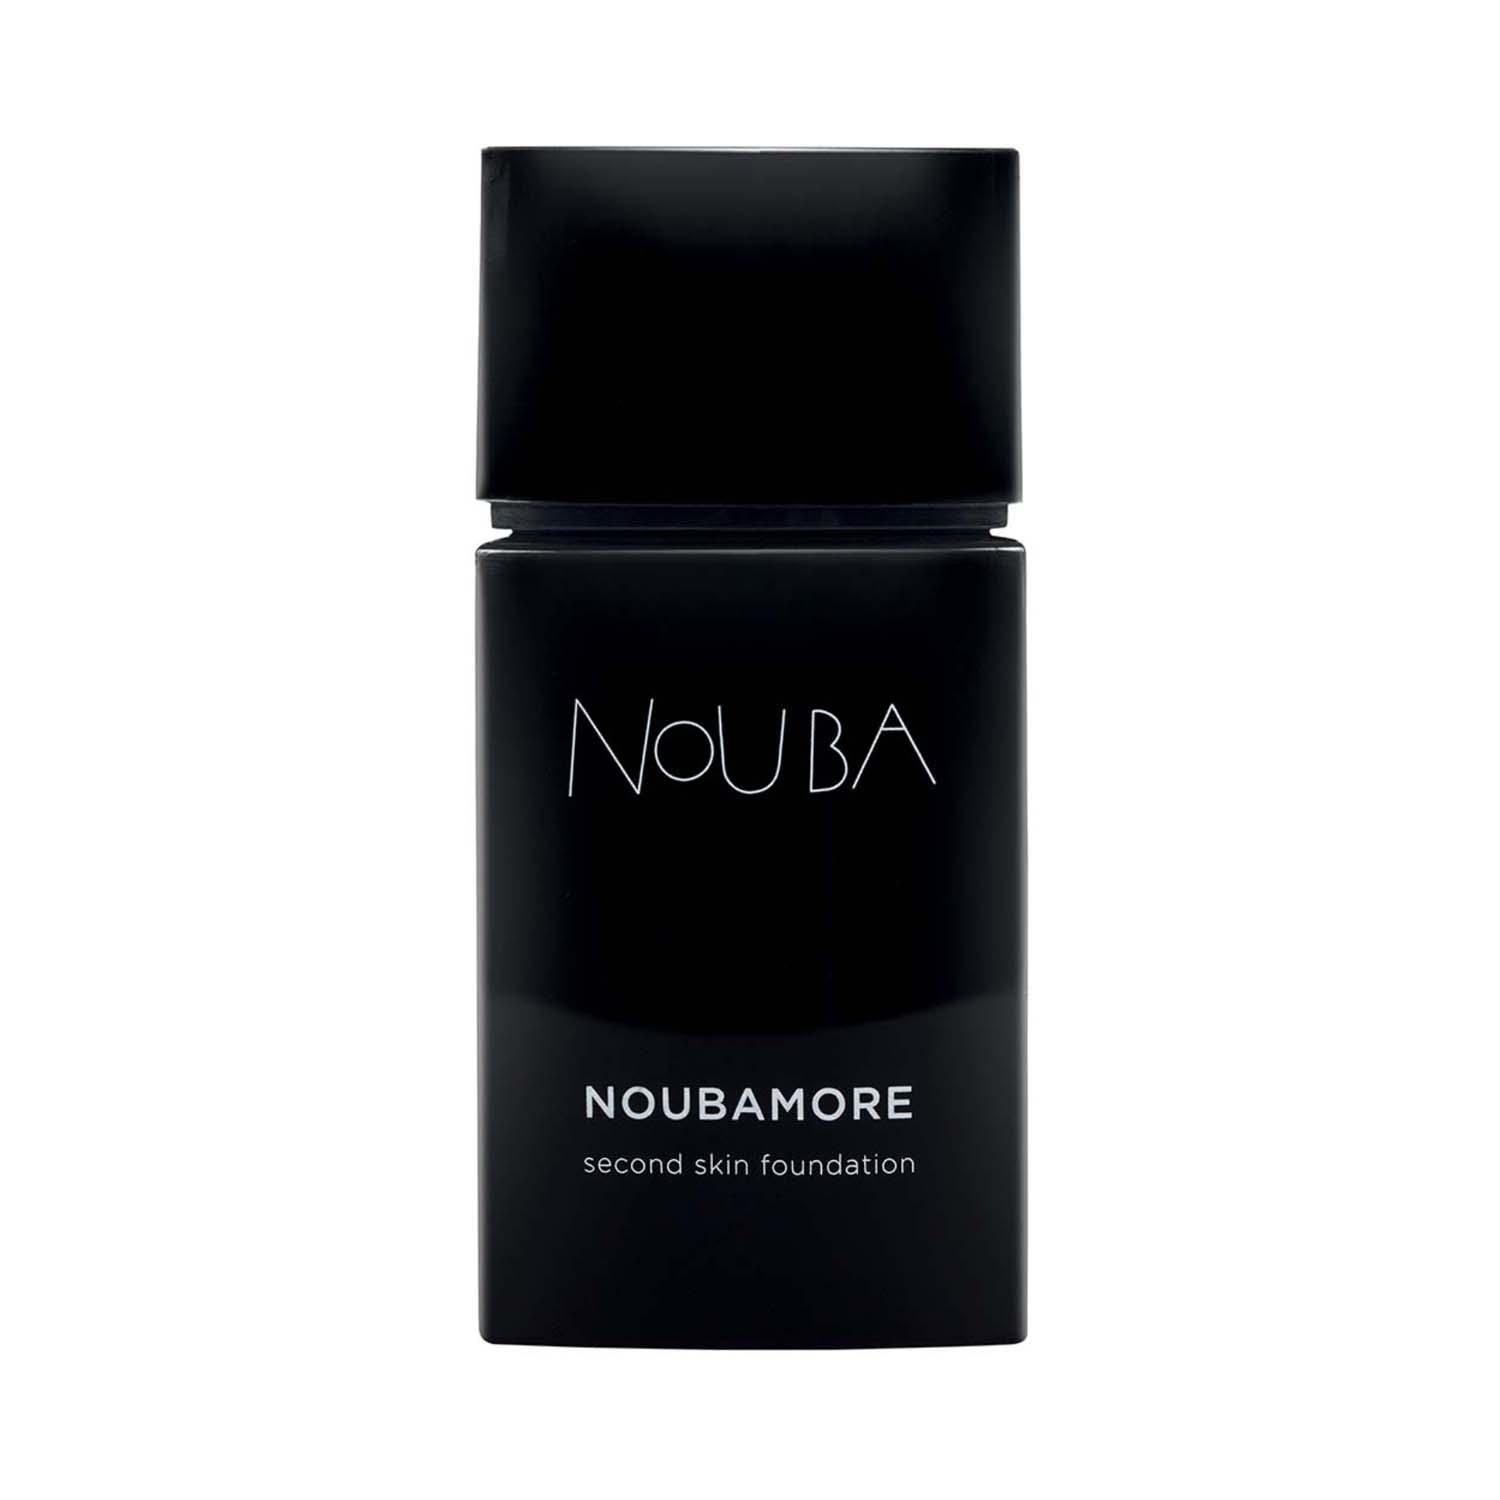 Nouba | Nouba Noubamore Second Skin Foundation - No 87 Brown (30 ml)